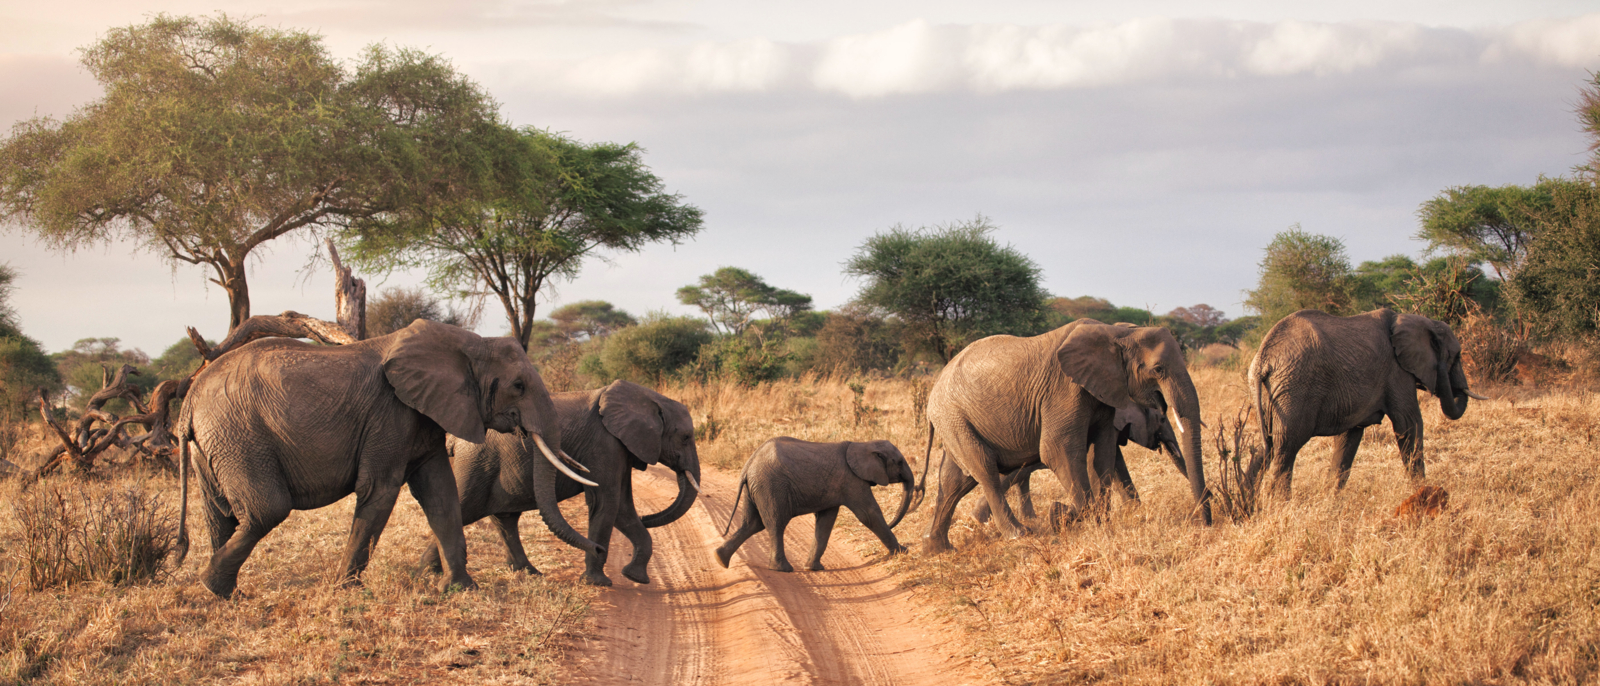 A family of elephants in Tarangire National park, Tanzania